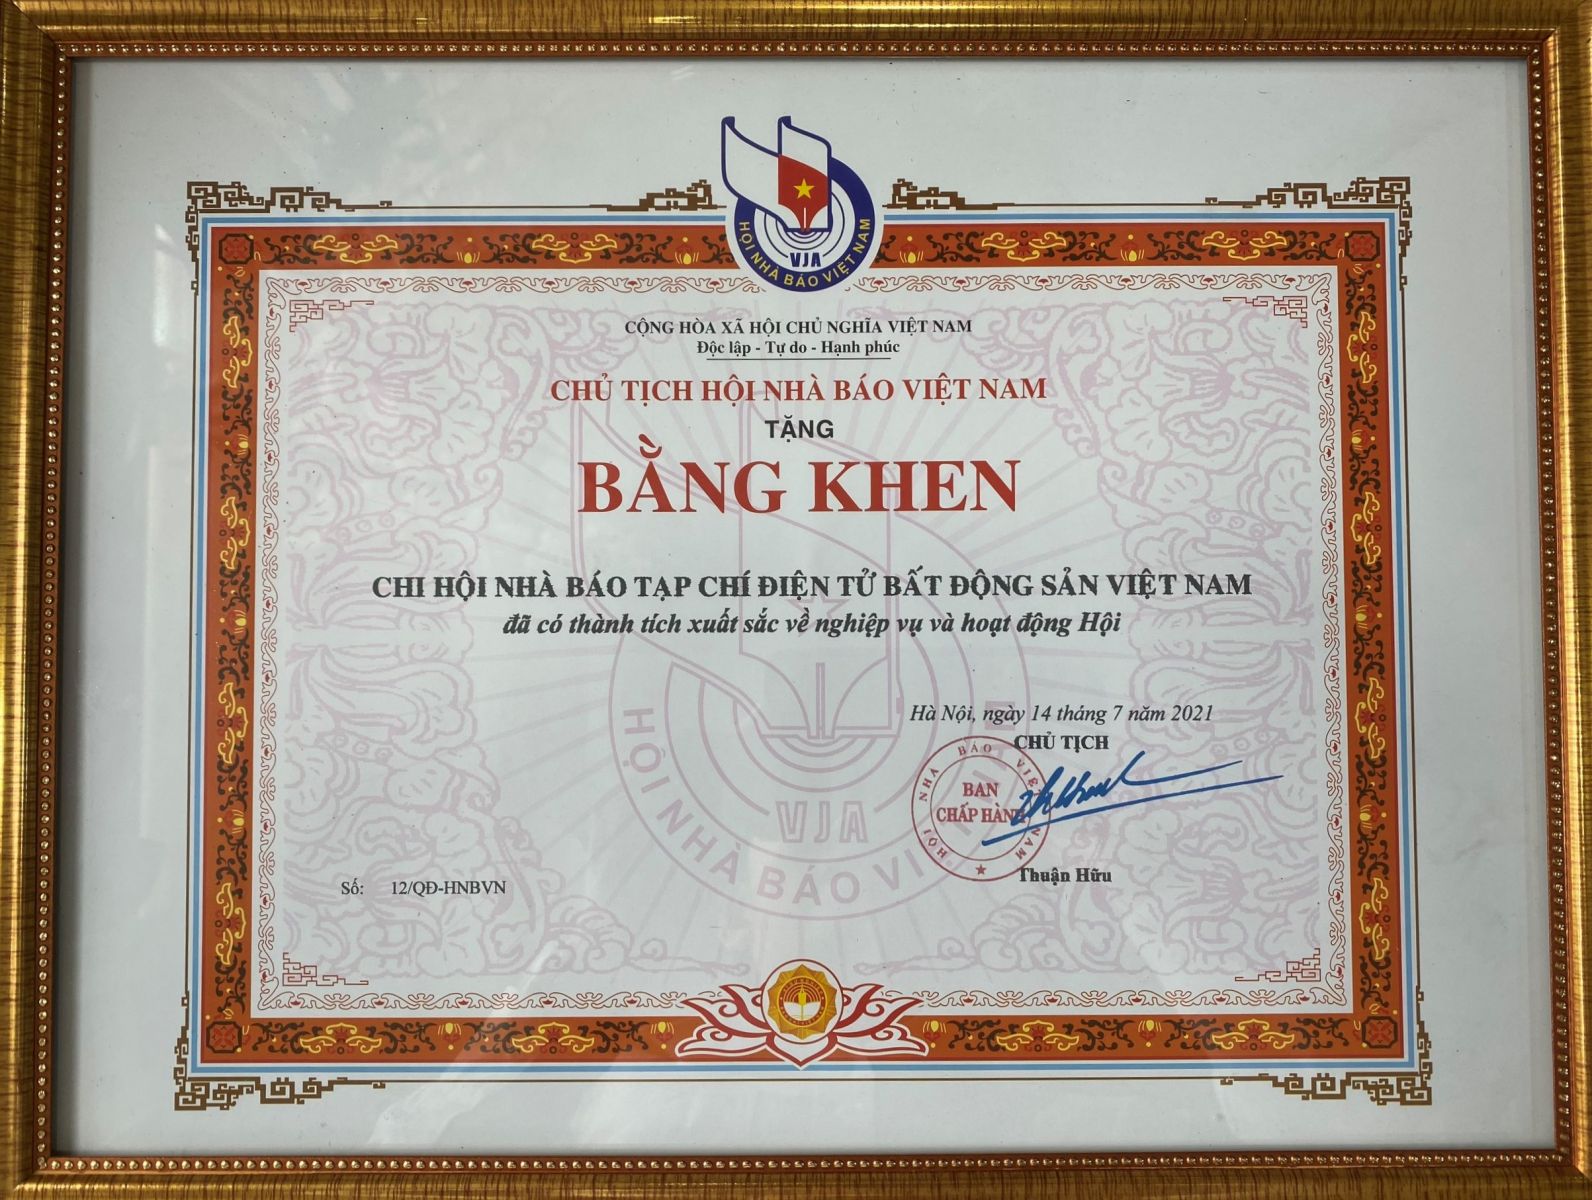 Chủ tịch Hội Nhà báo Việt Nam tặng bằng khen cho Chi hội Nhà báo Tạp chí điện tử Bất động sản Việt Nam đã có thành tích xuất sắc về nghiệp vụ và hoạt động Hội.